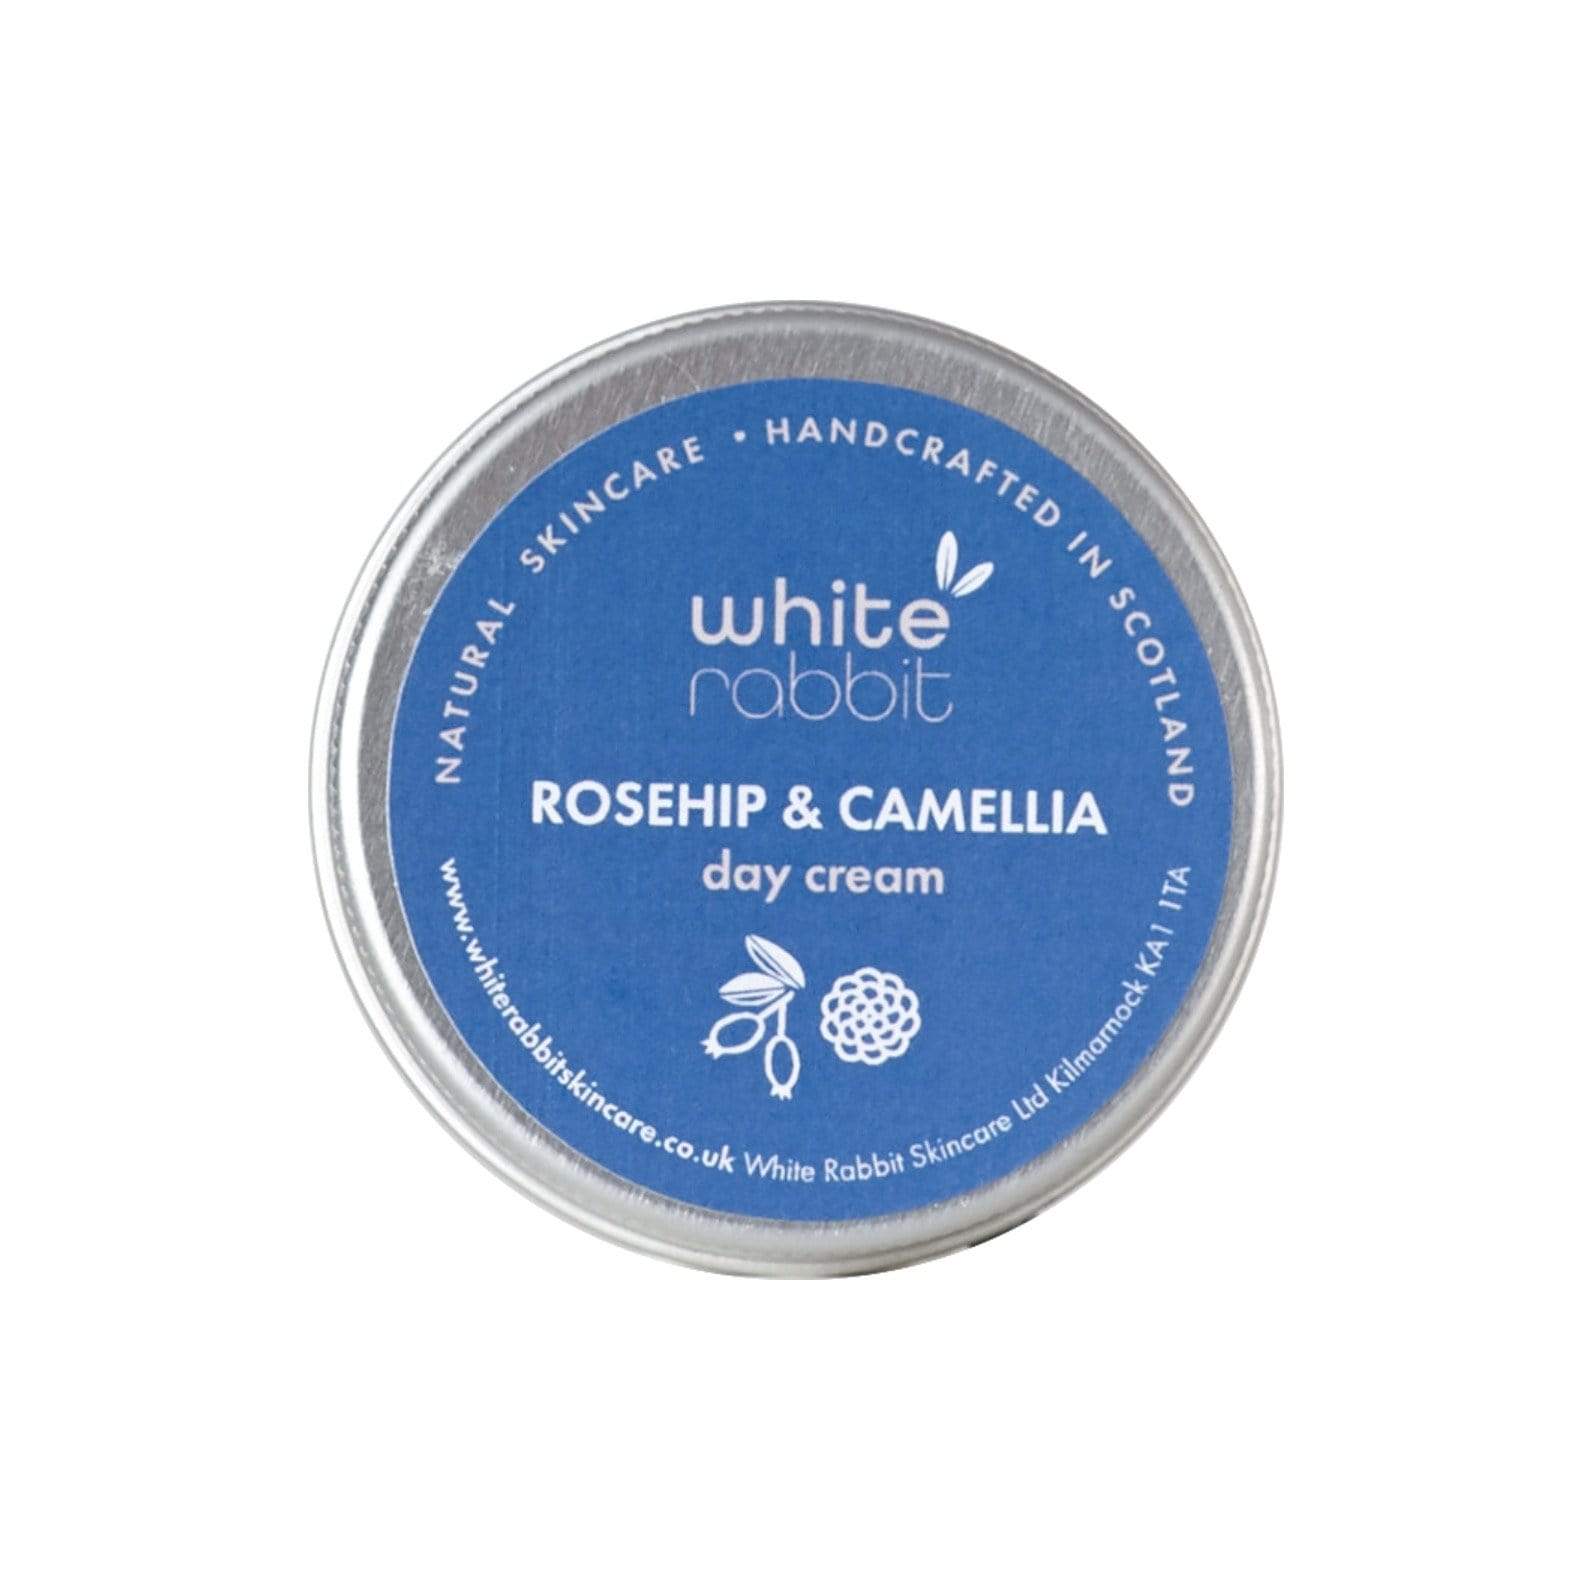 Rosehip & Camellia Day Cream - Plastic Free Amsterdam